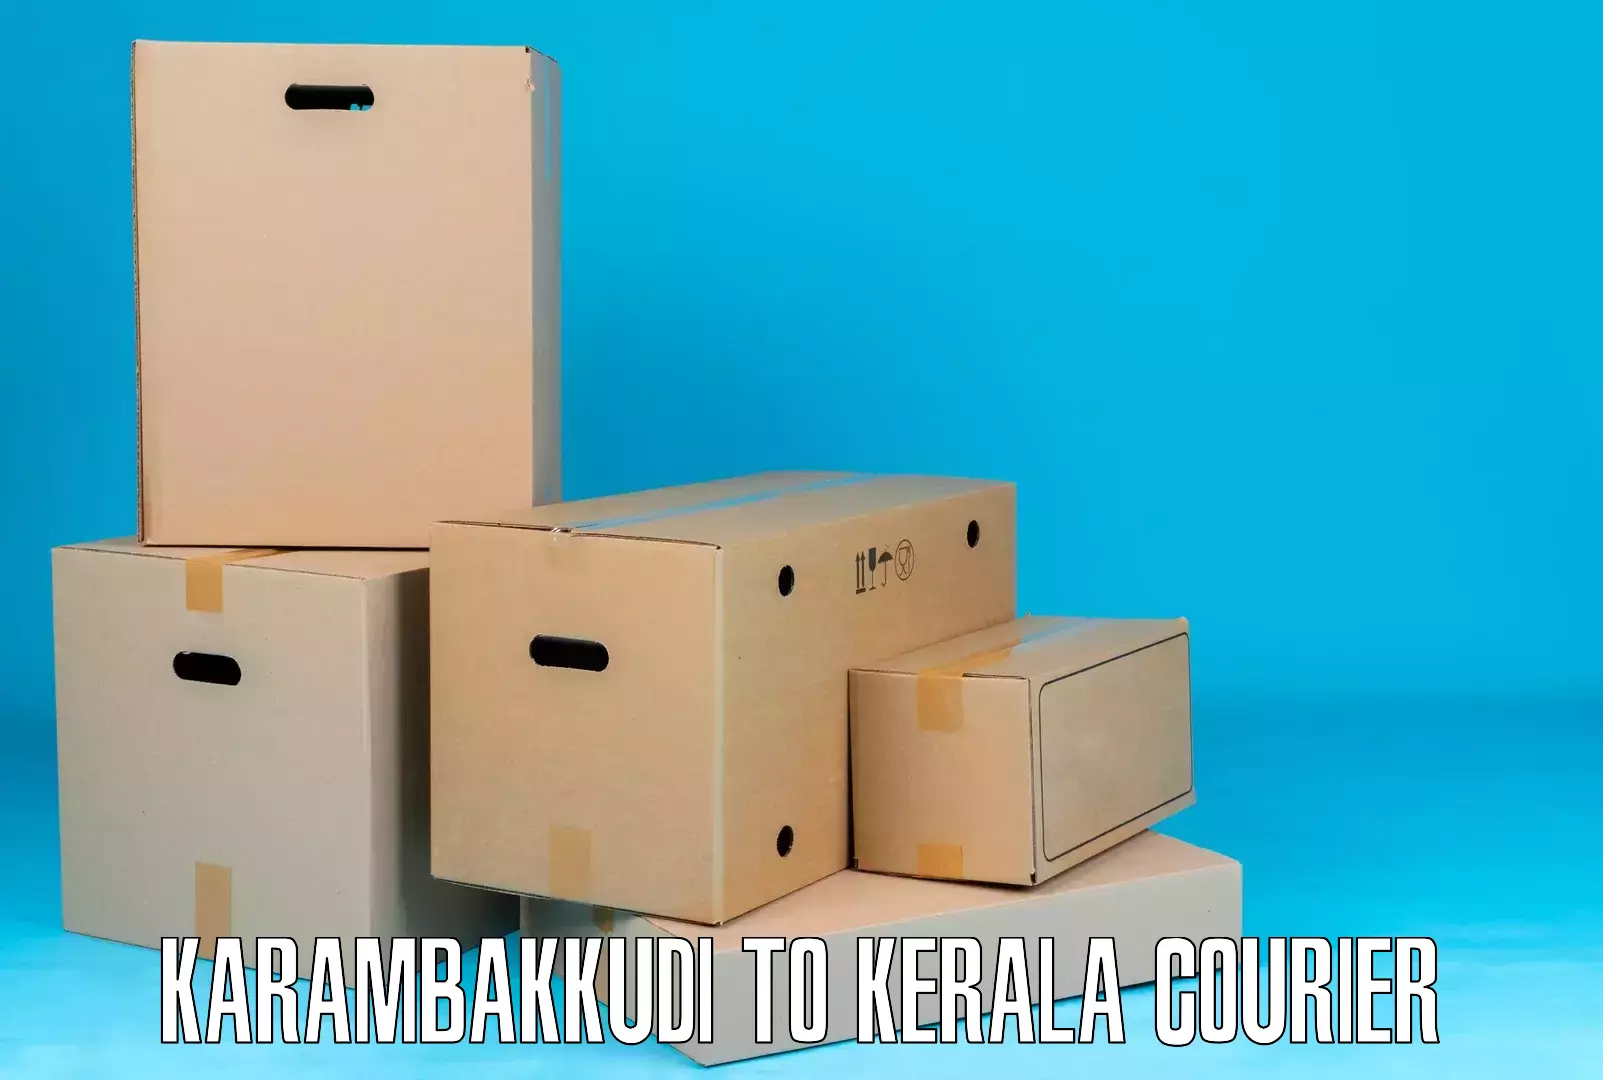 Parcel handling and care Karambakkudi to IIT Palakkad